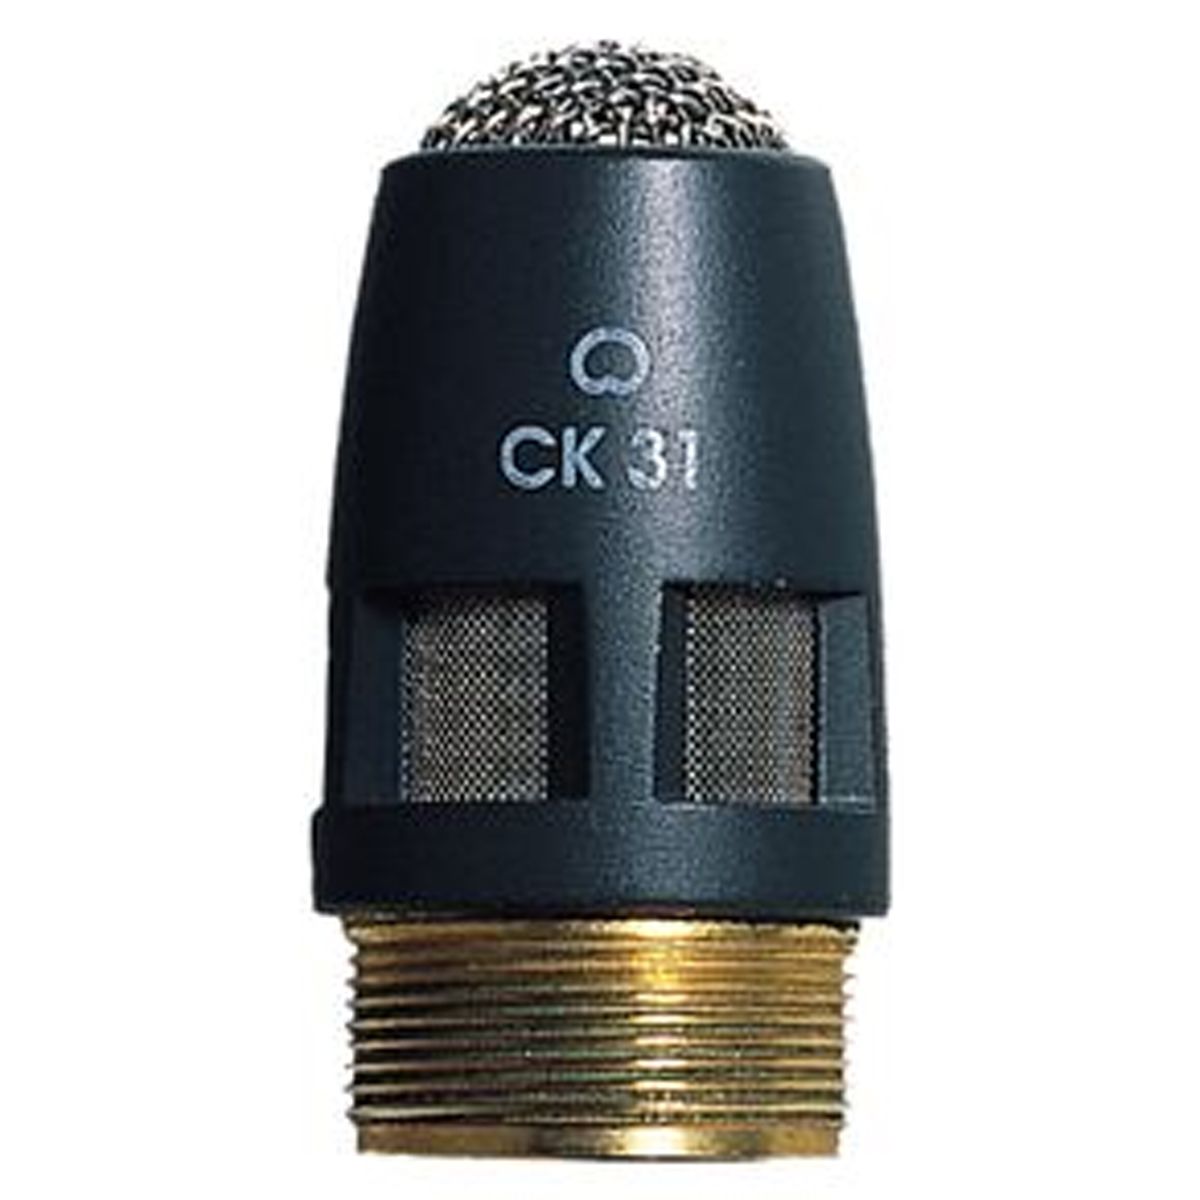 Kit Microfone de Coral AKG HM1000 + Capsula CK31